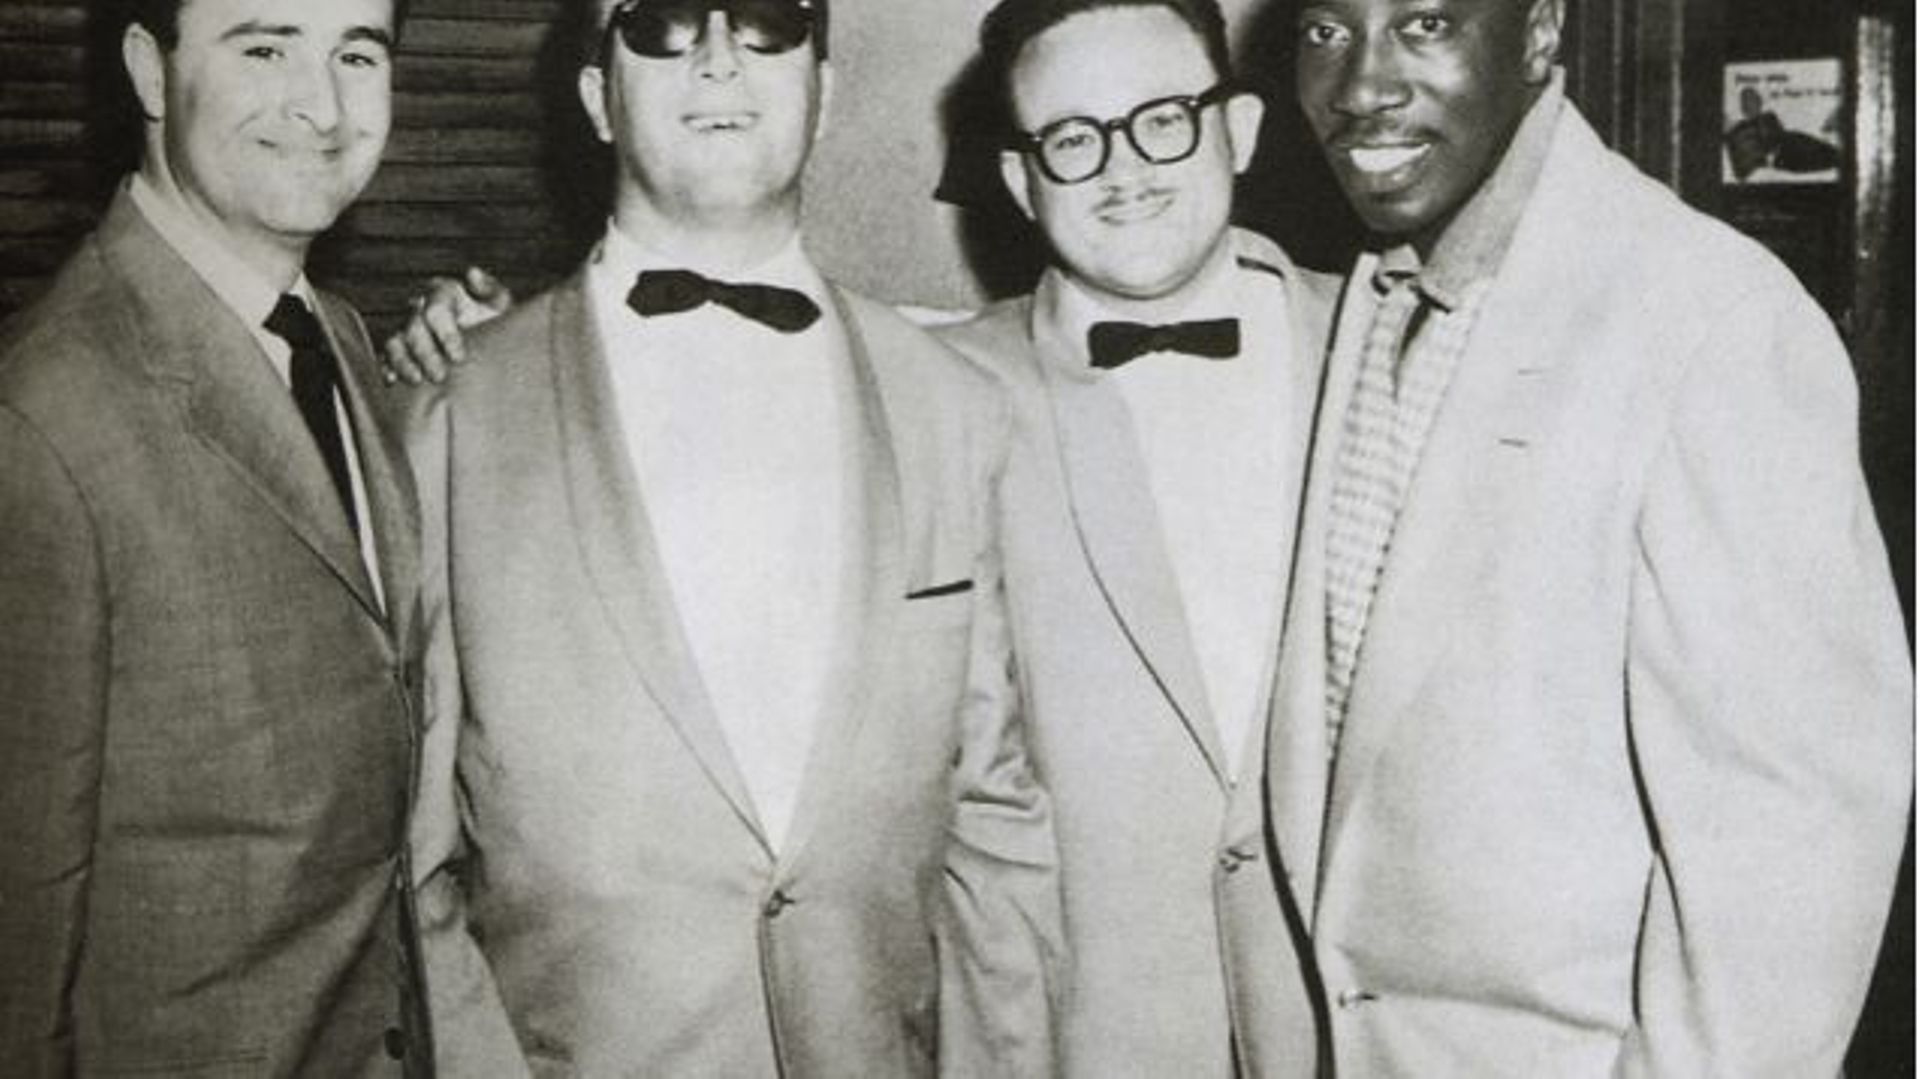 Toots en 1953, accompagné de Bobbejan Schoepen, George Shearing et Joe Williams (de gauche à droite)